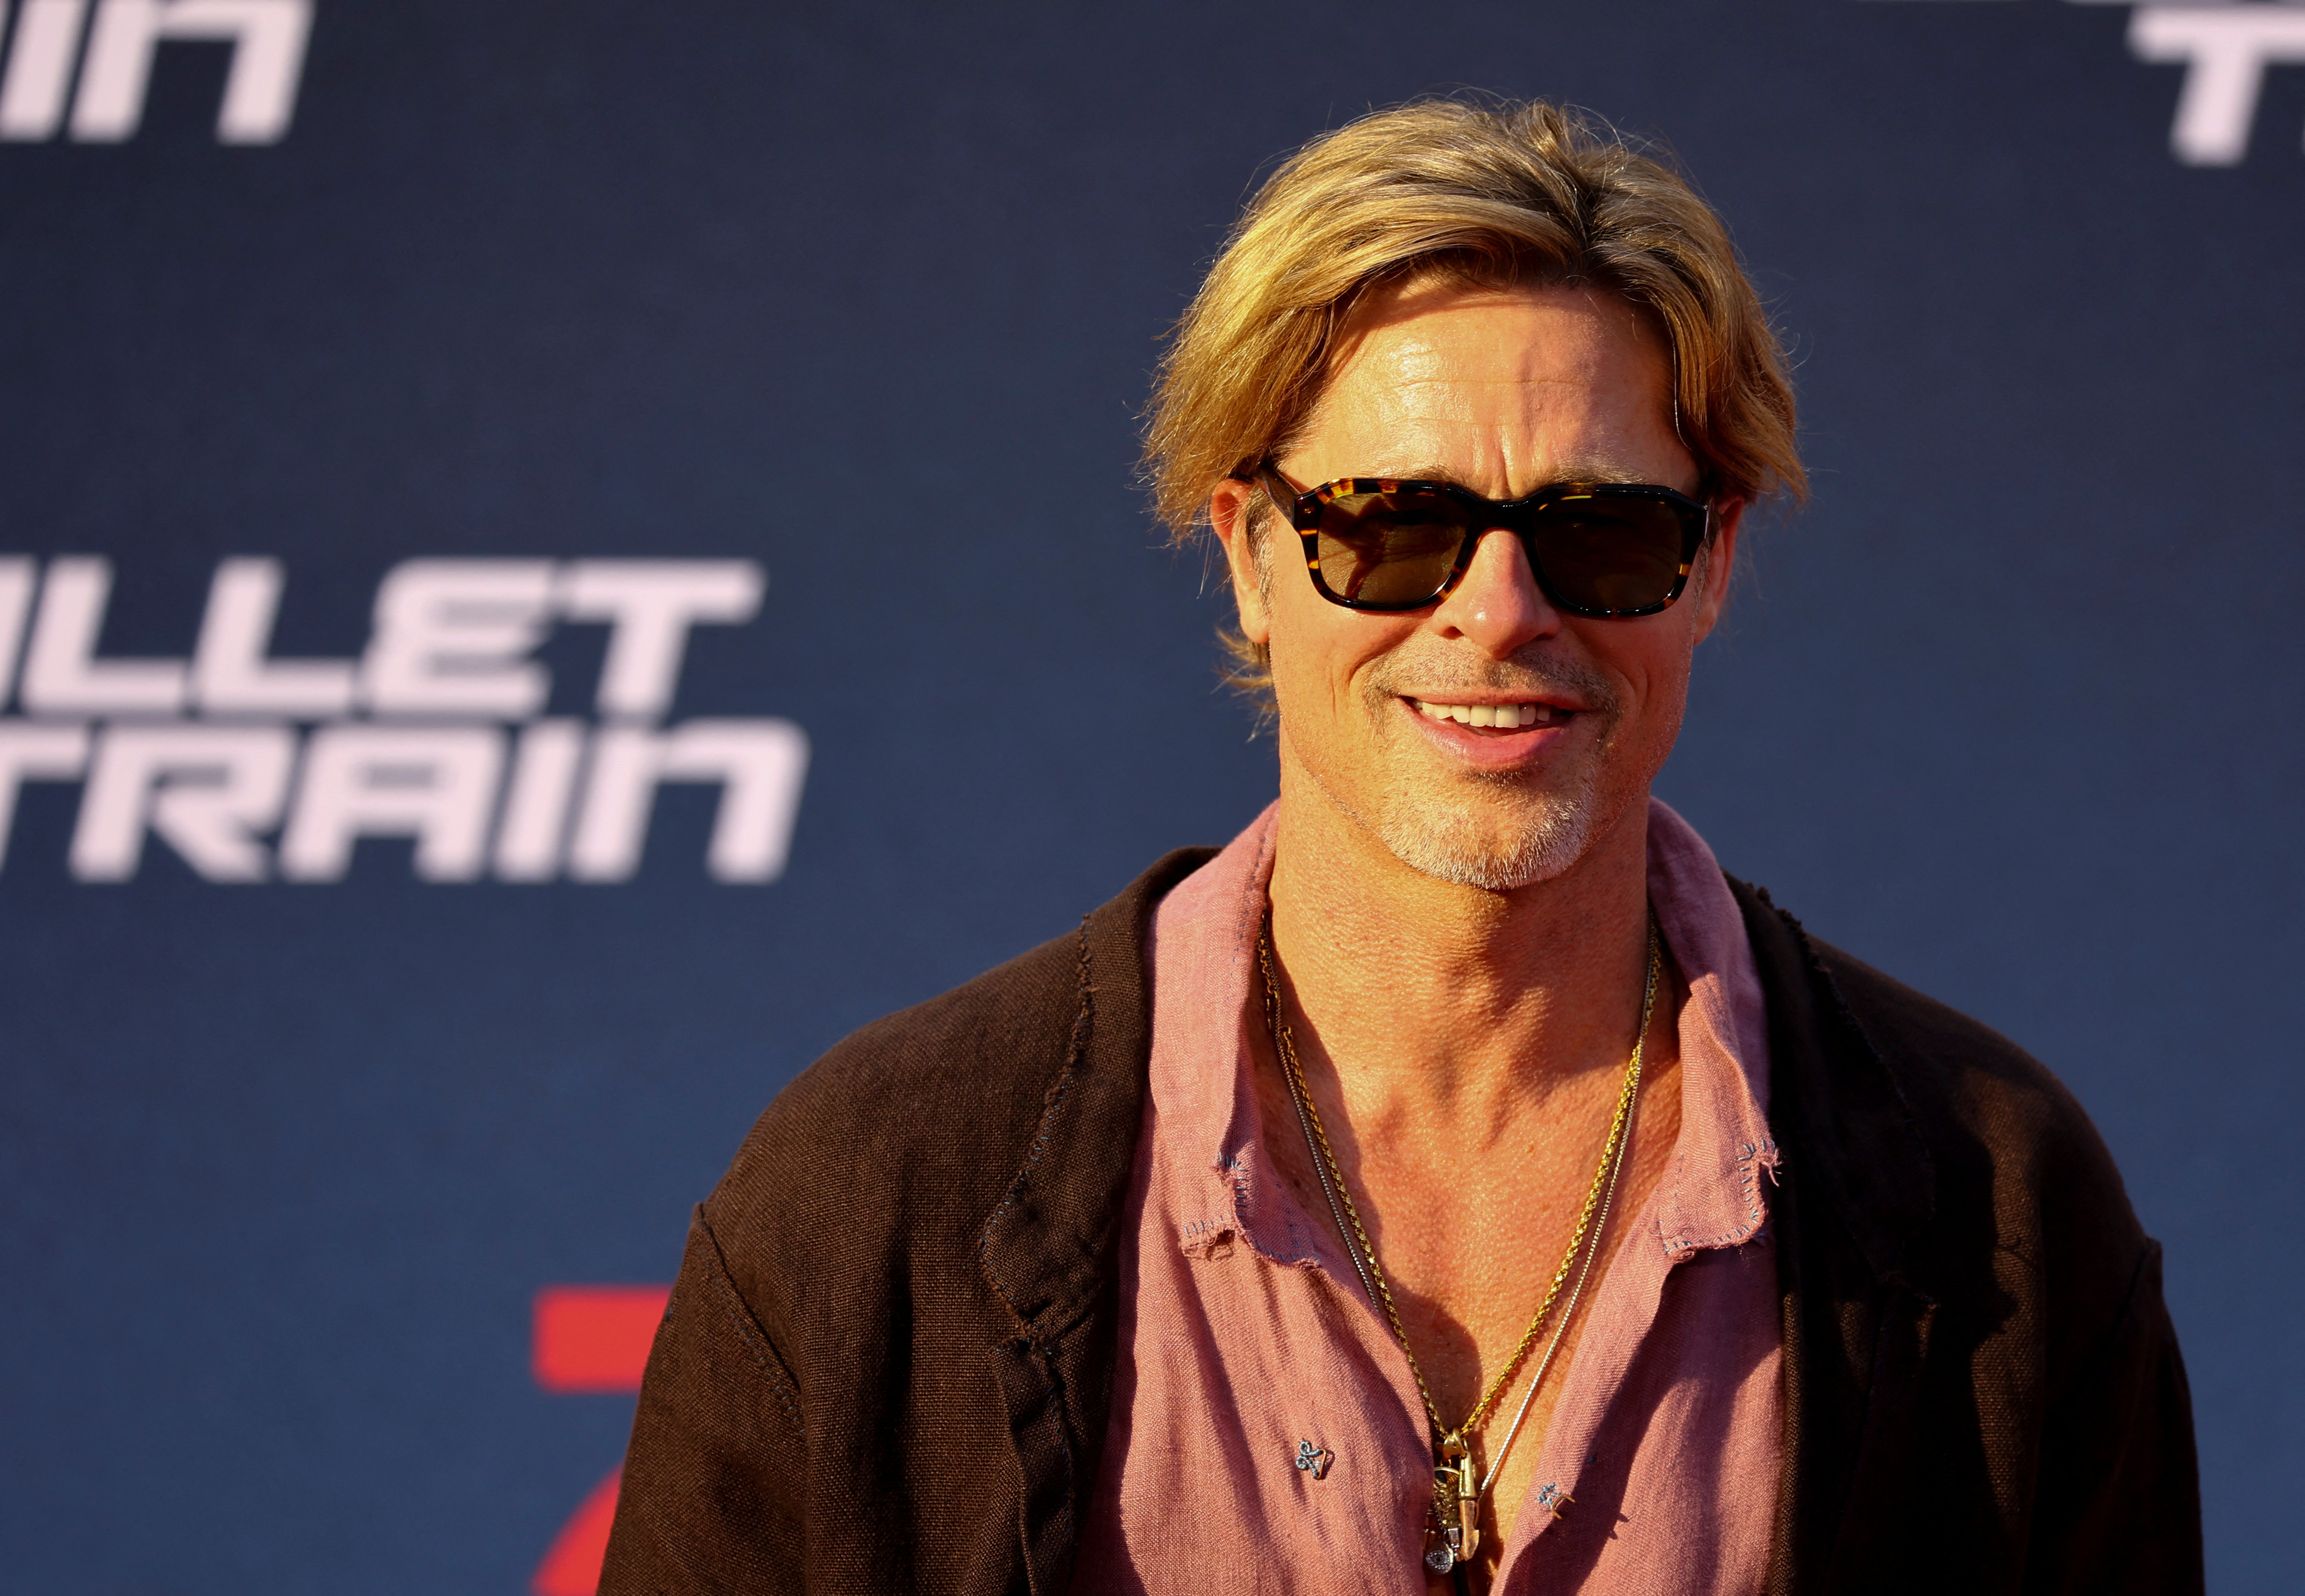 La lista negra de Brad Pitt: revelaron que hay varios actores con los que no quiere volver a trabajar